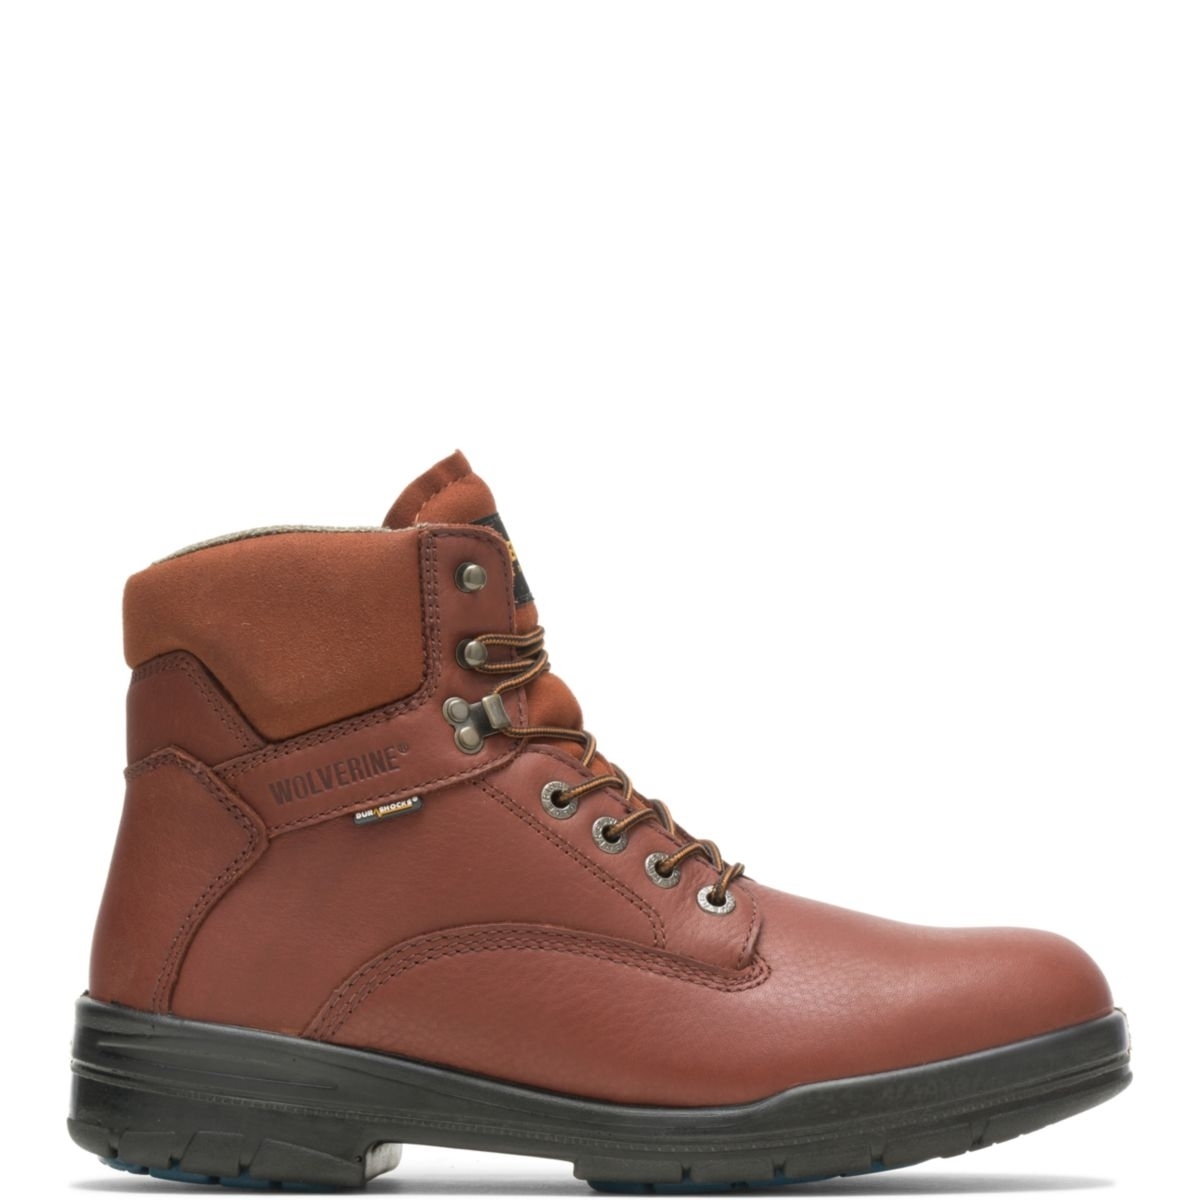 WOLVERINE Men's 6 DuraShocksÂ® Steel Toe Direct-Attach Work Boot Brown - W03120 BROWN - BROWN, 11